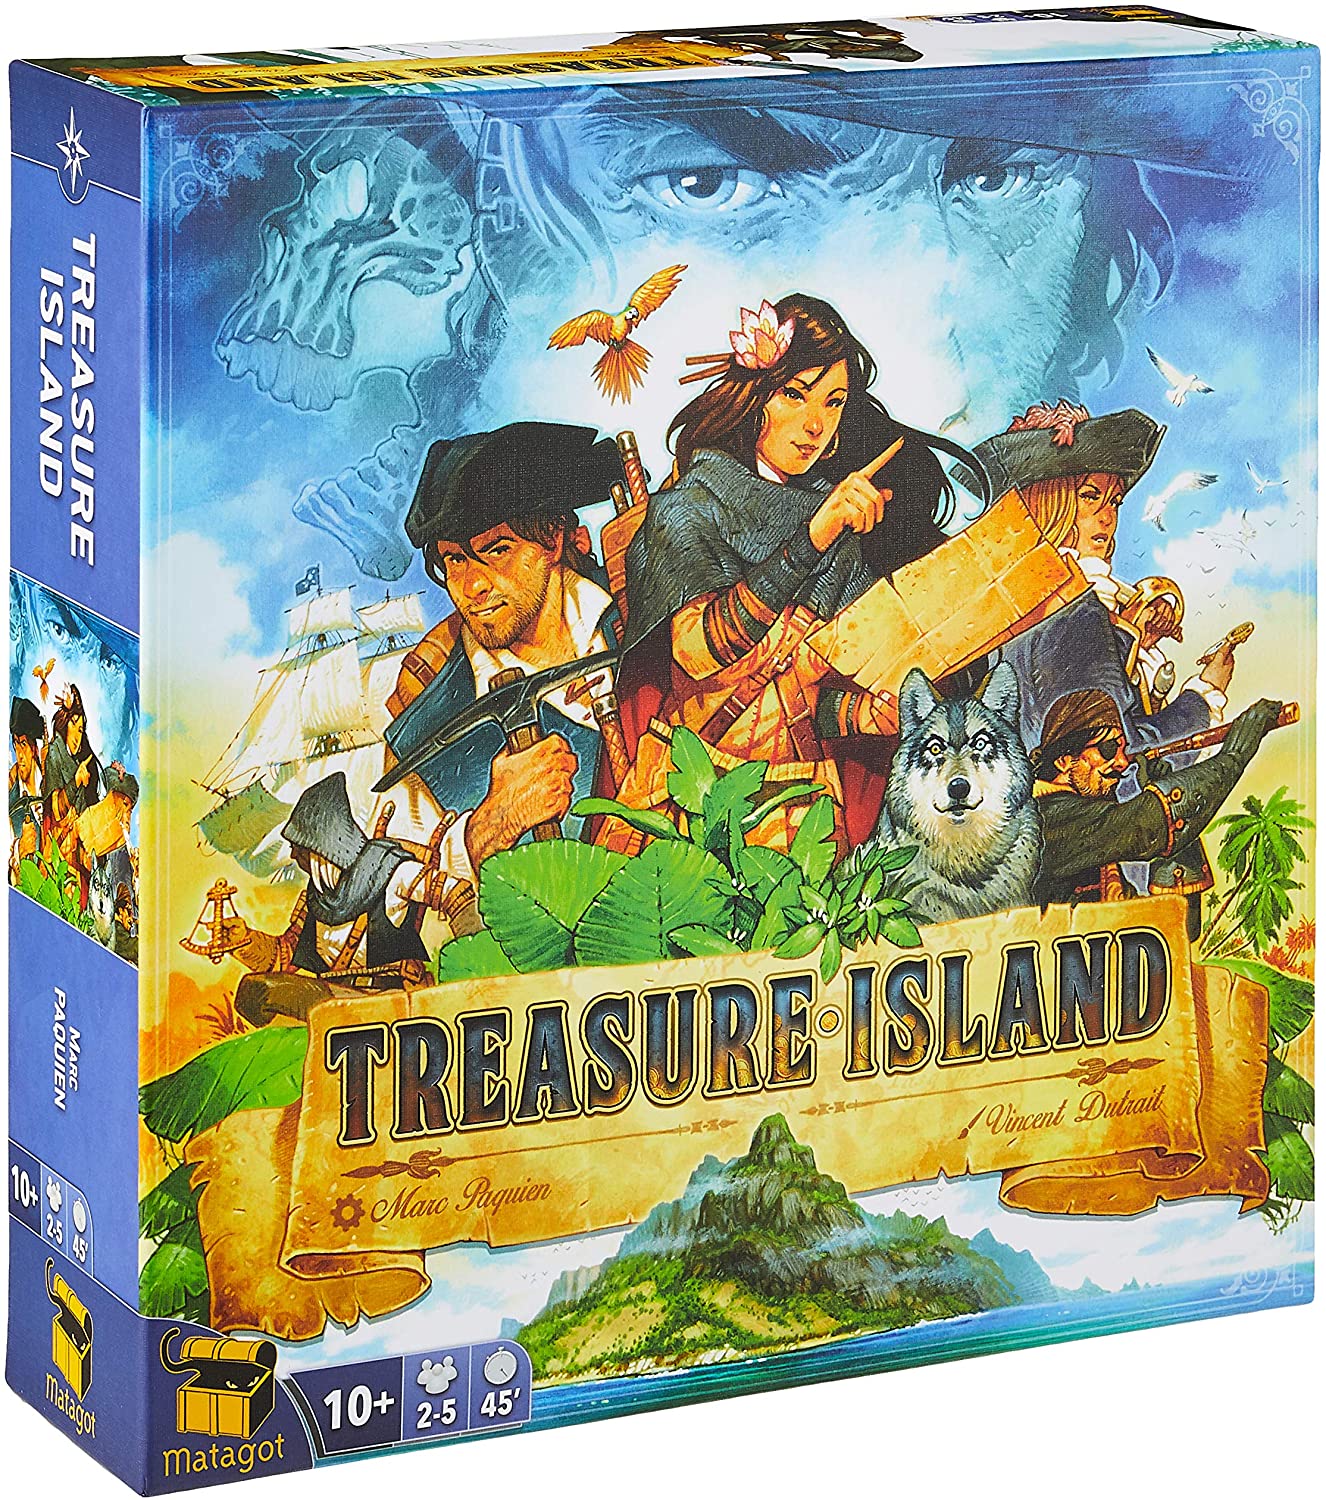 Treasure Island | D20 Games